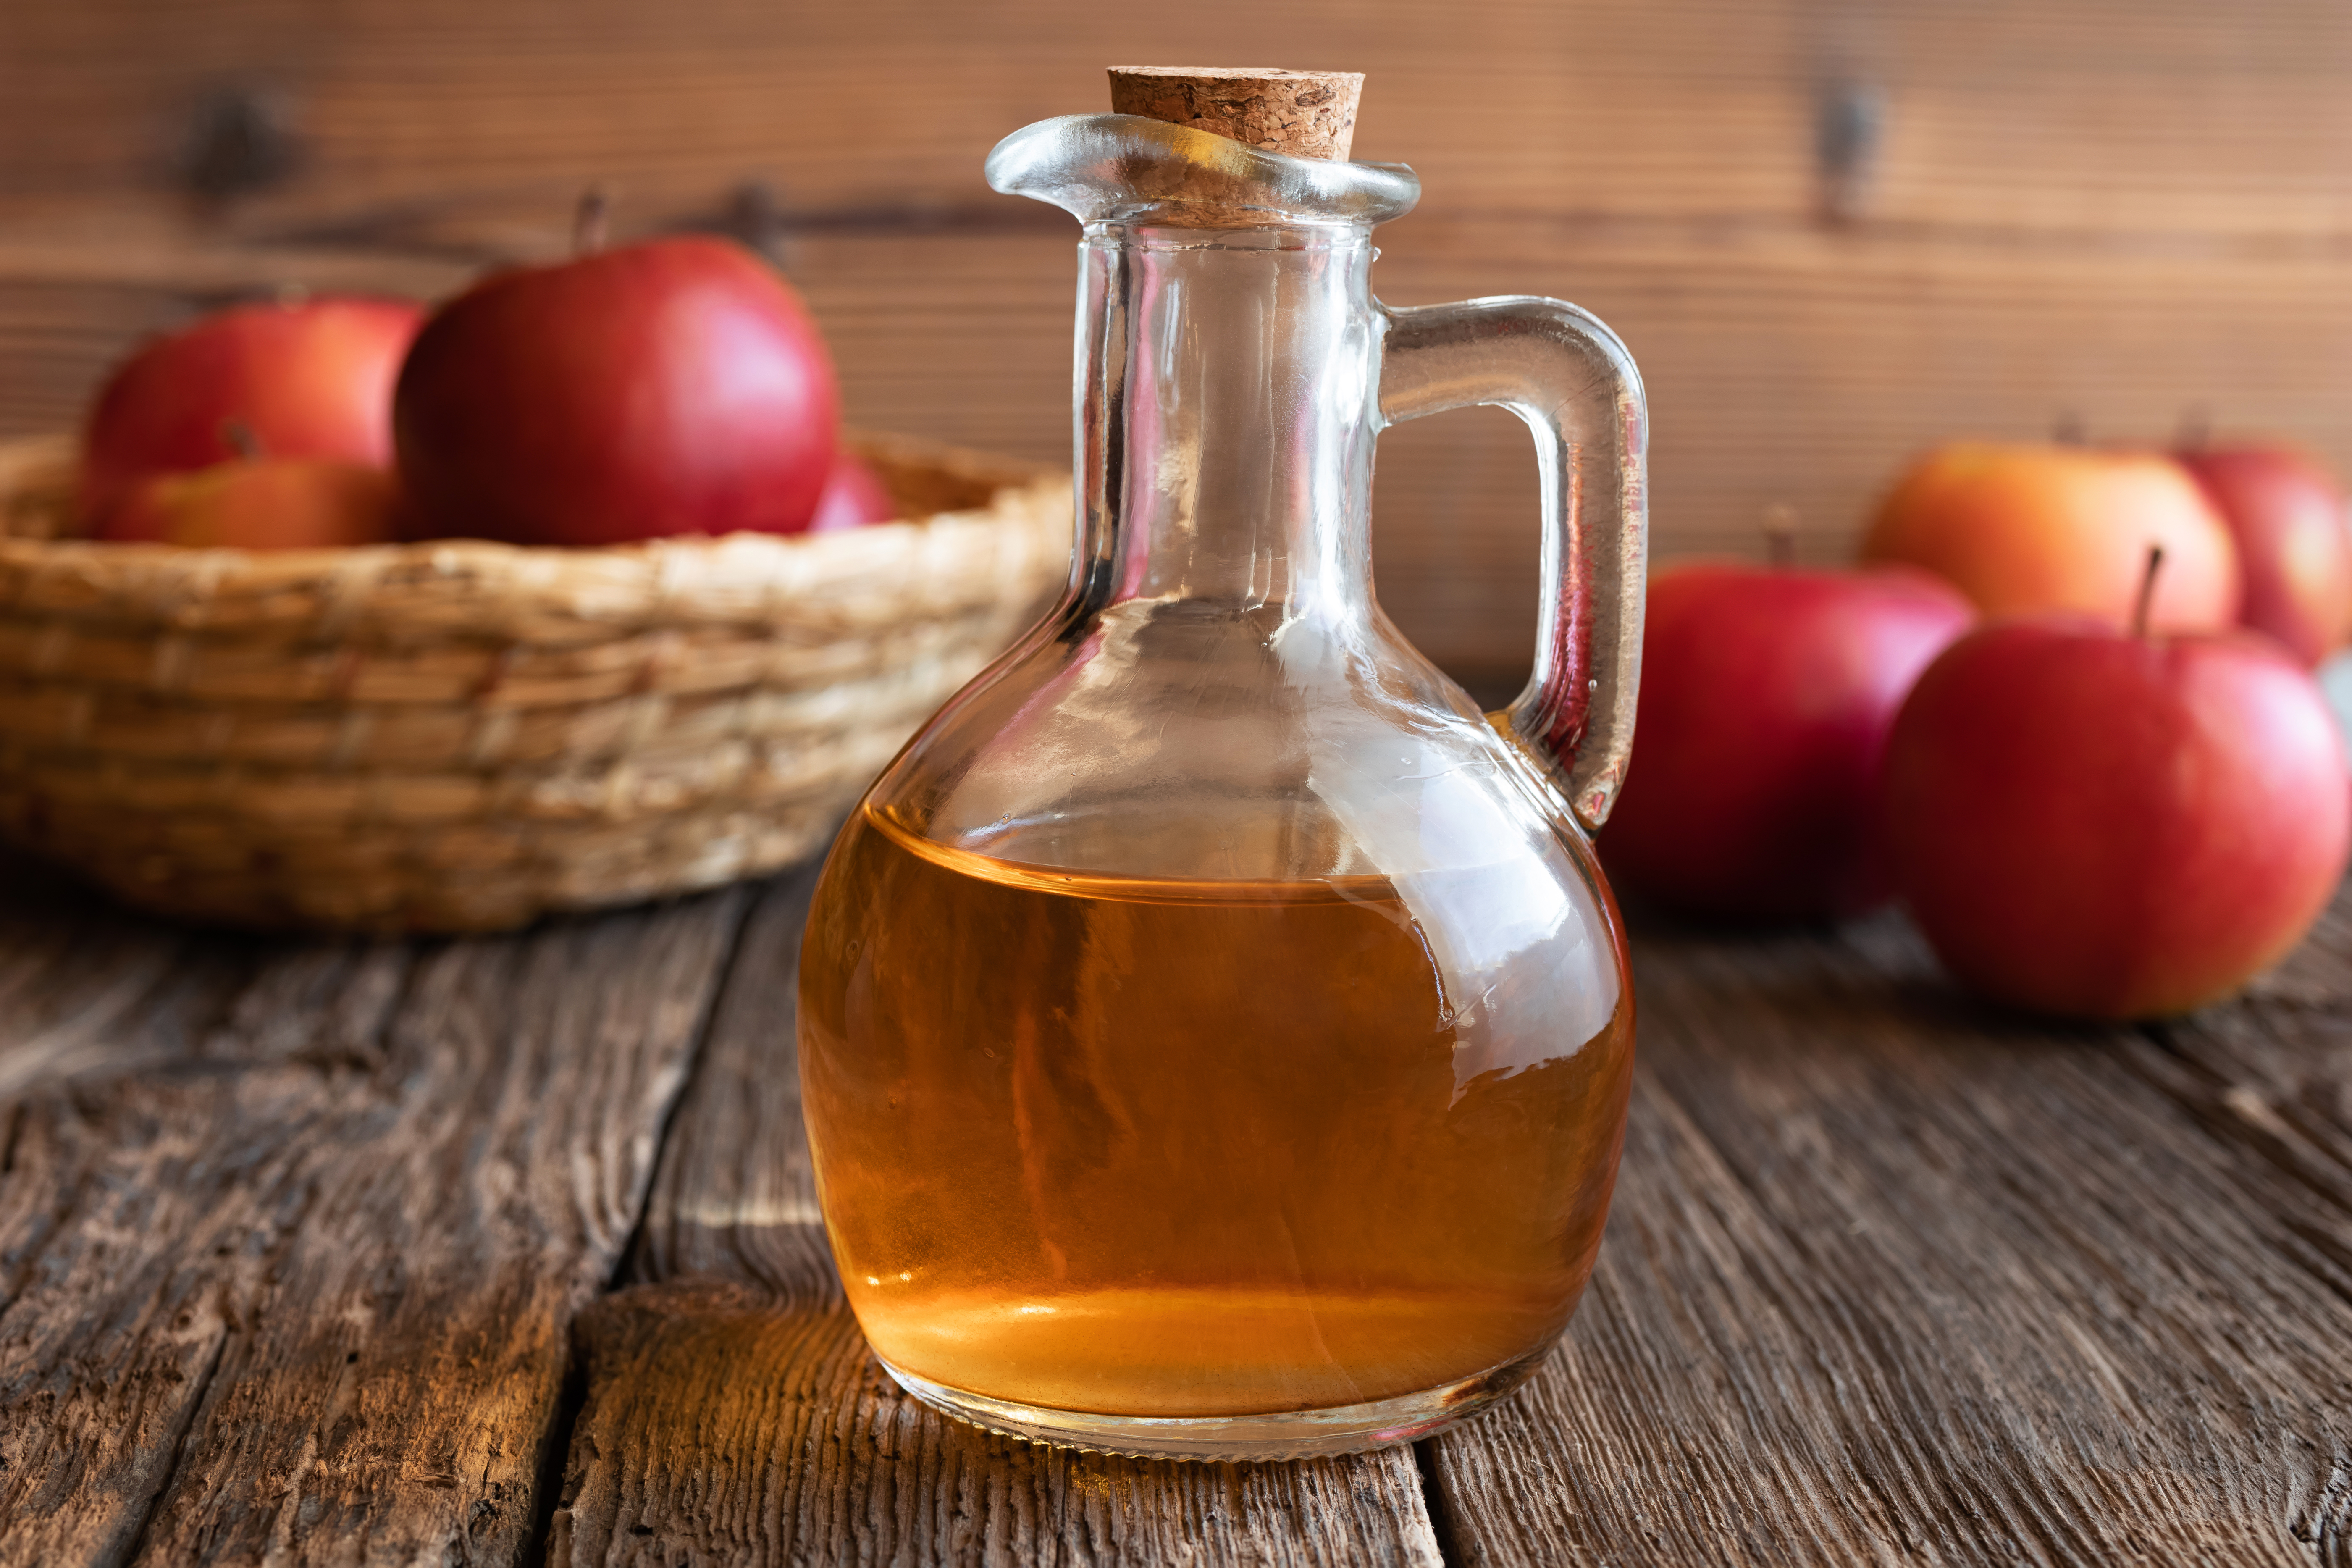 Vinagre de manzana: ¿qué tipo de enfermedades cura este producto?